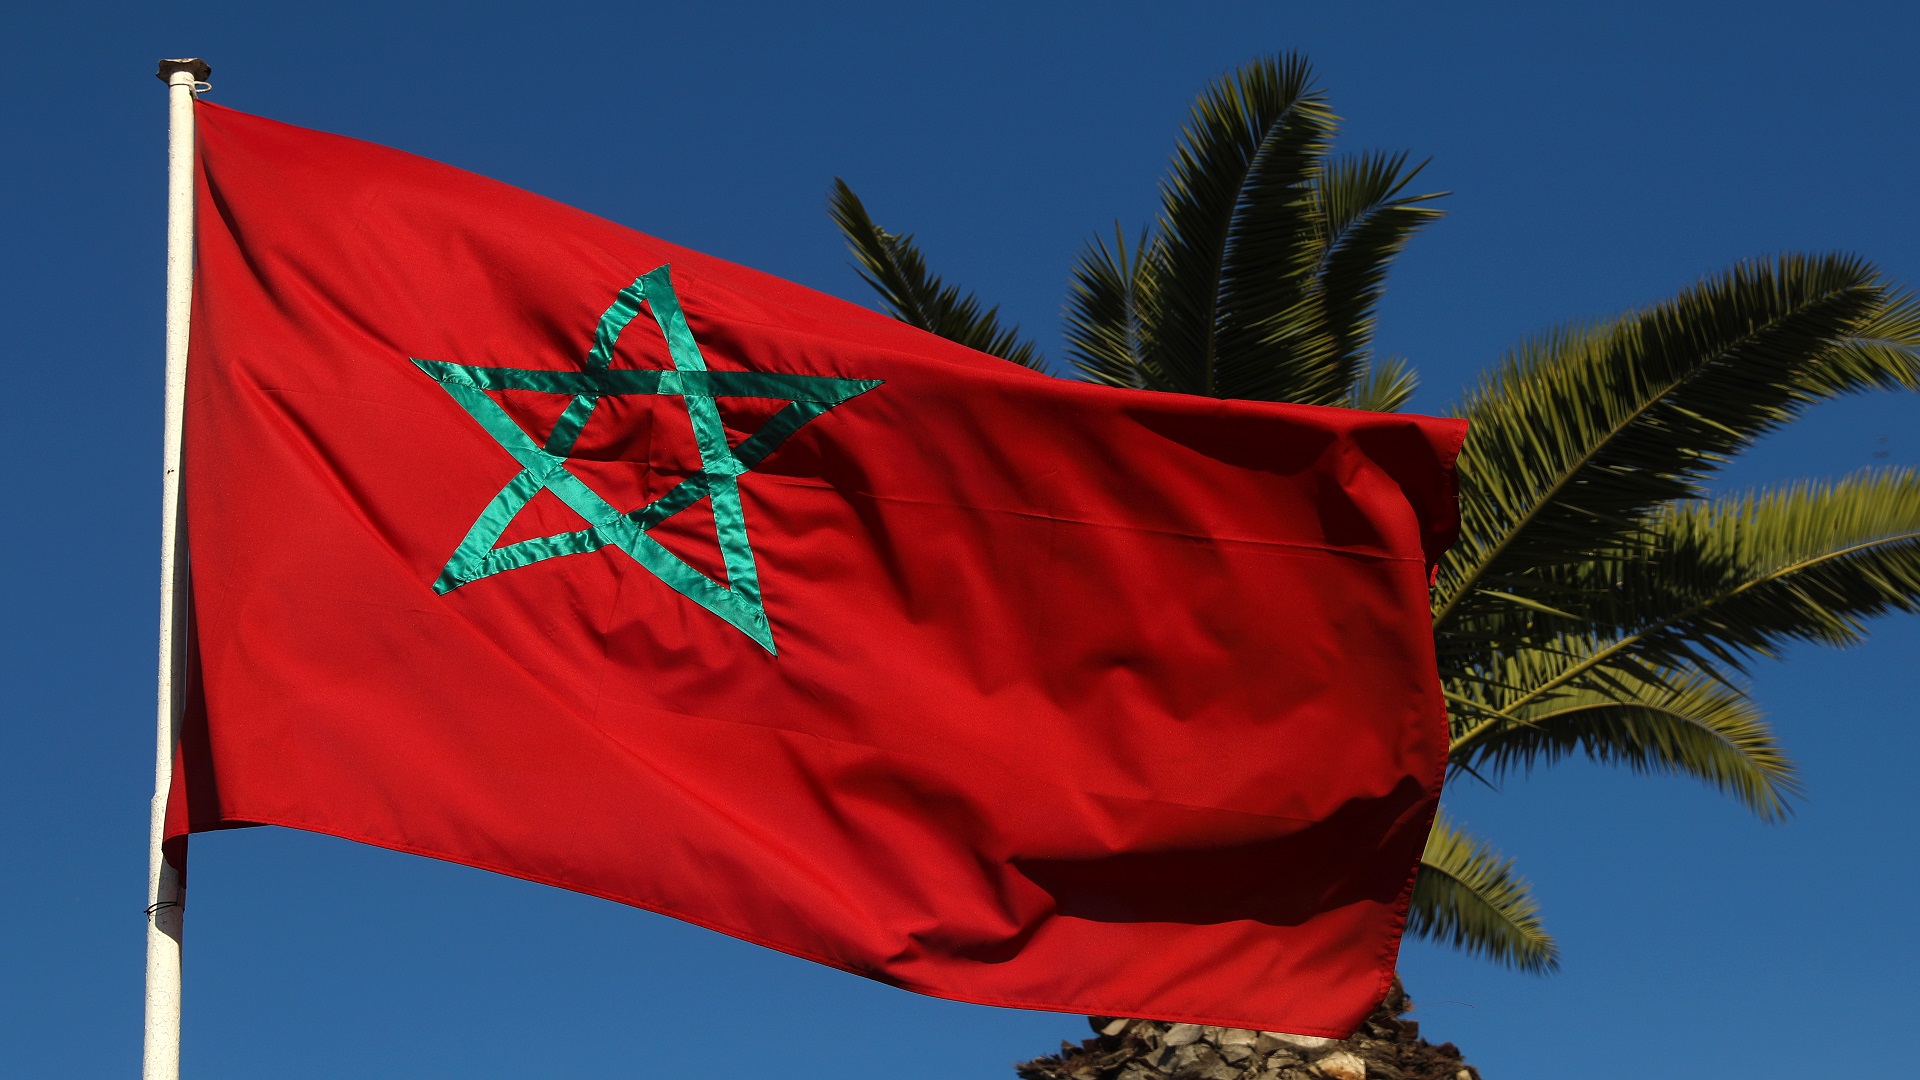 “النقد الدولي” يتوقع نمو اقتصاد المغرب بنسبة 3 بالمئة خلال 2022